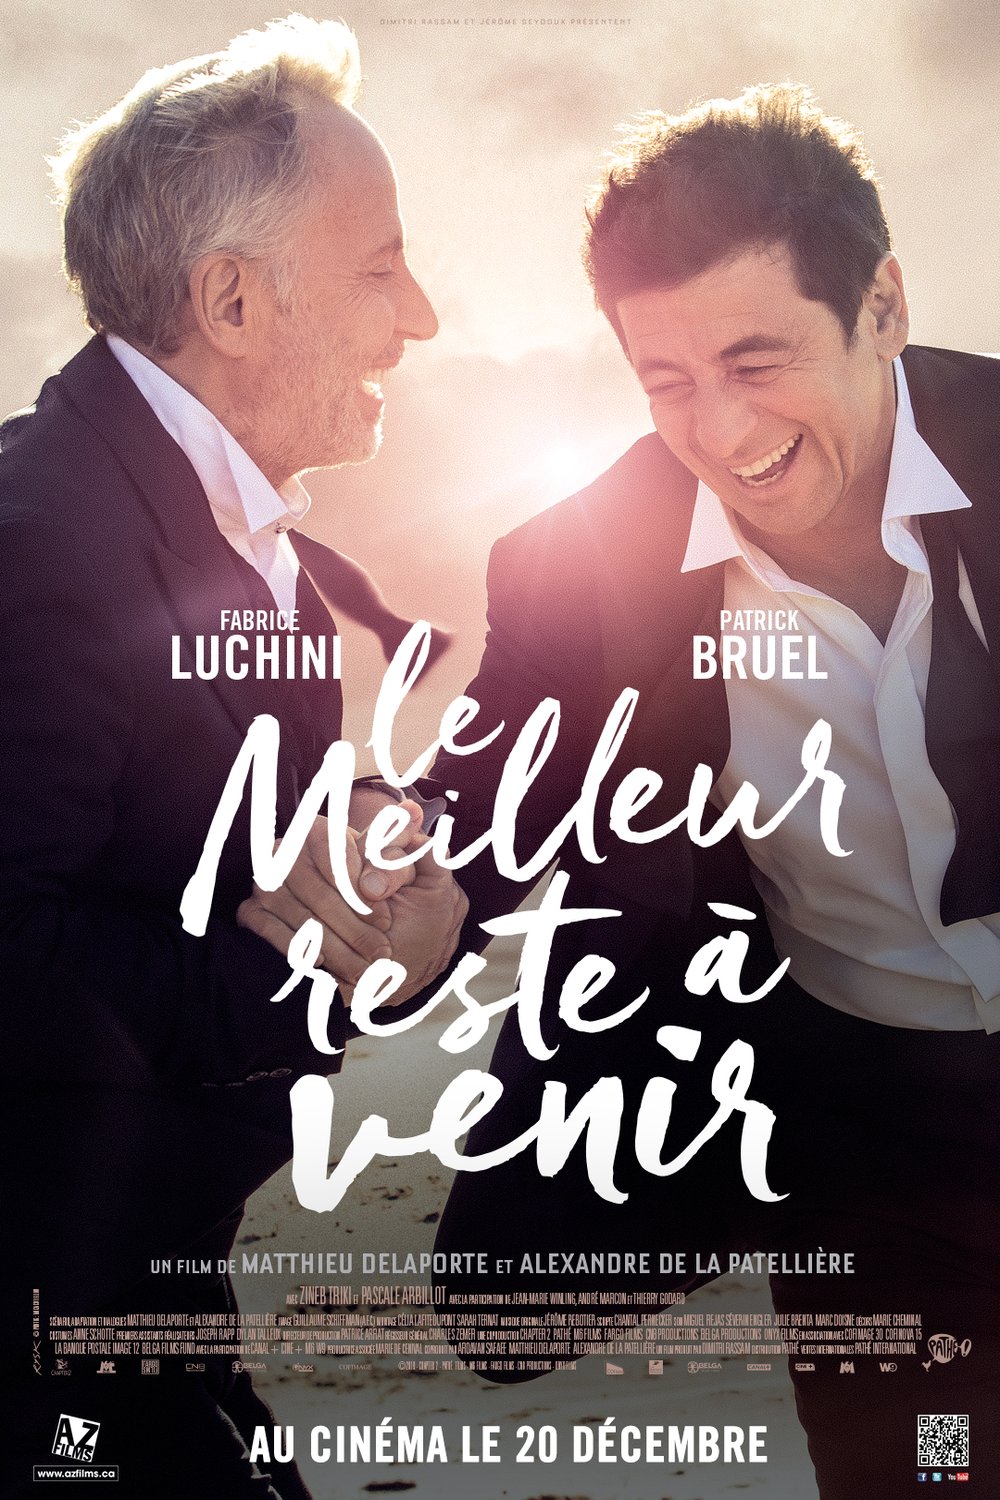 Poster of the movie Le Meilleur reste à venir